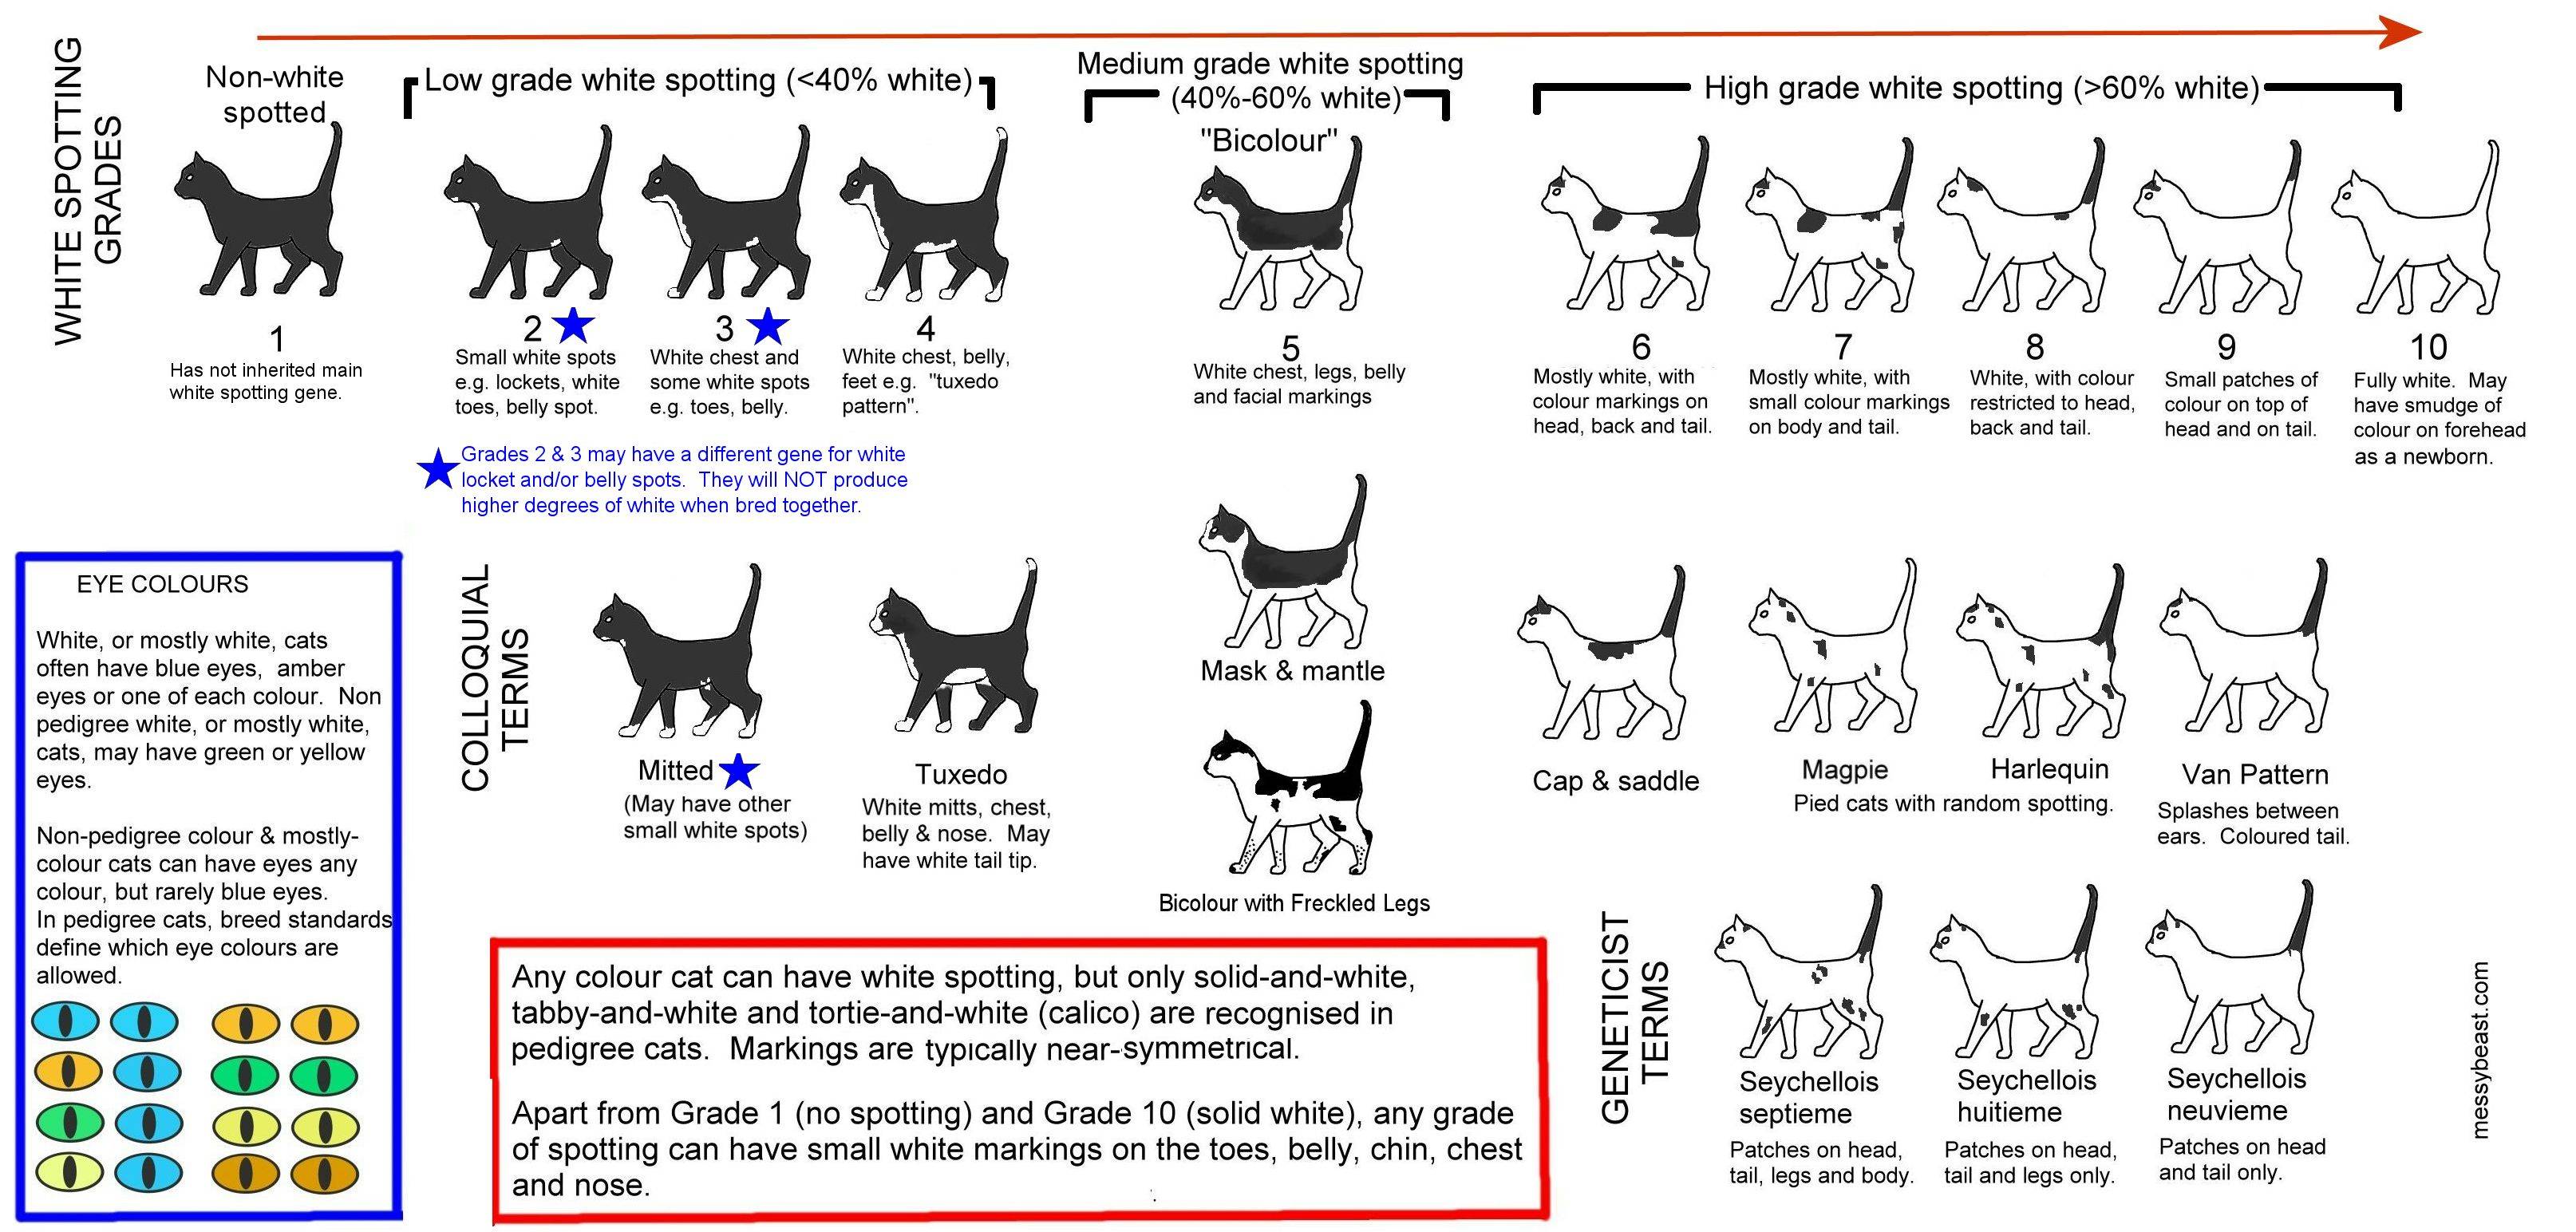 Как определить возраст котенка: по внешнему виду, телосложению, весу, зубам и поведению